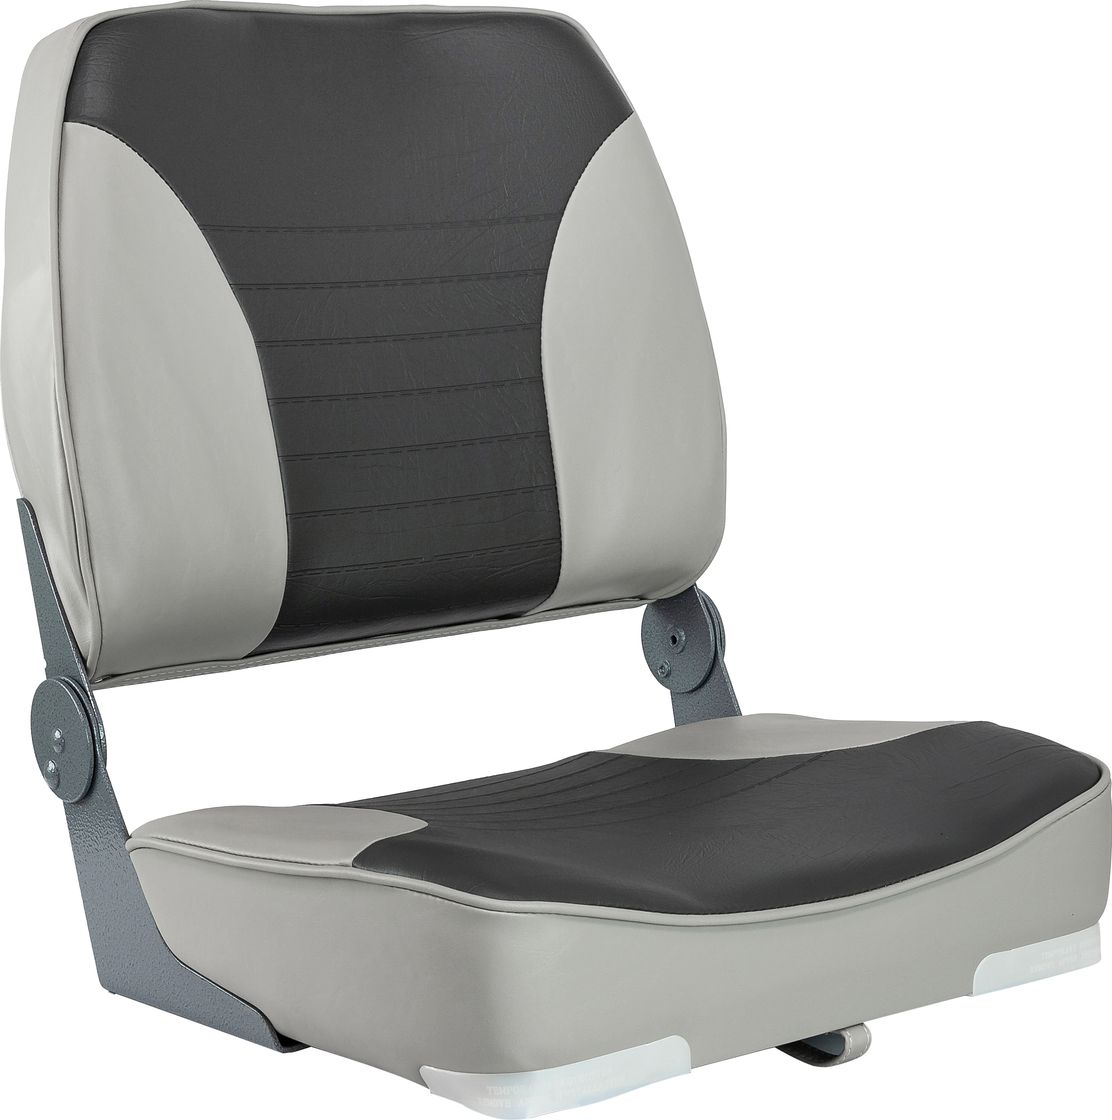 Кресло XXL складное мягкое двухцветное серый/темно-серый 1040693 кресло складное premium серый темно серый 106202501